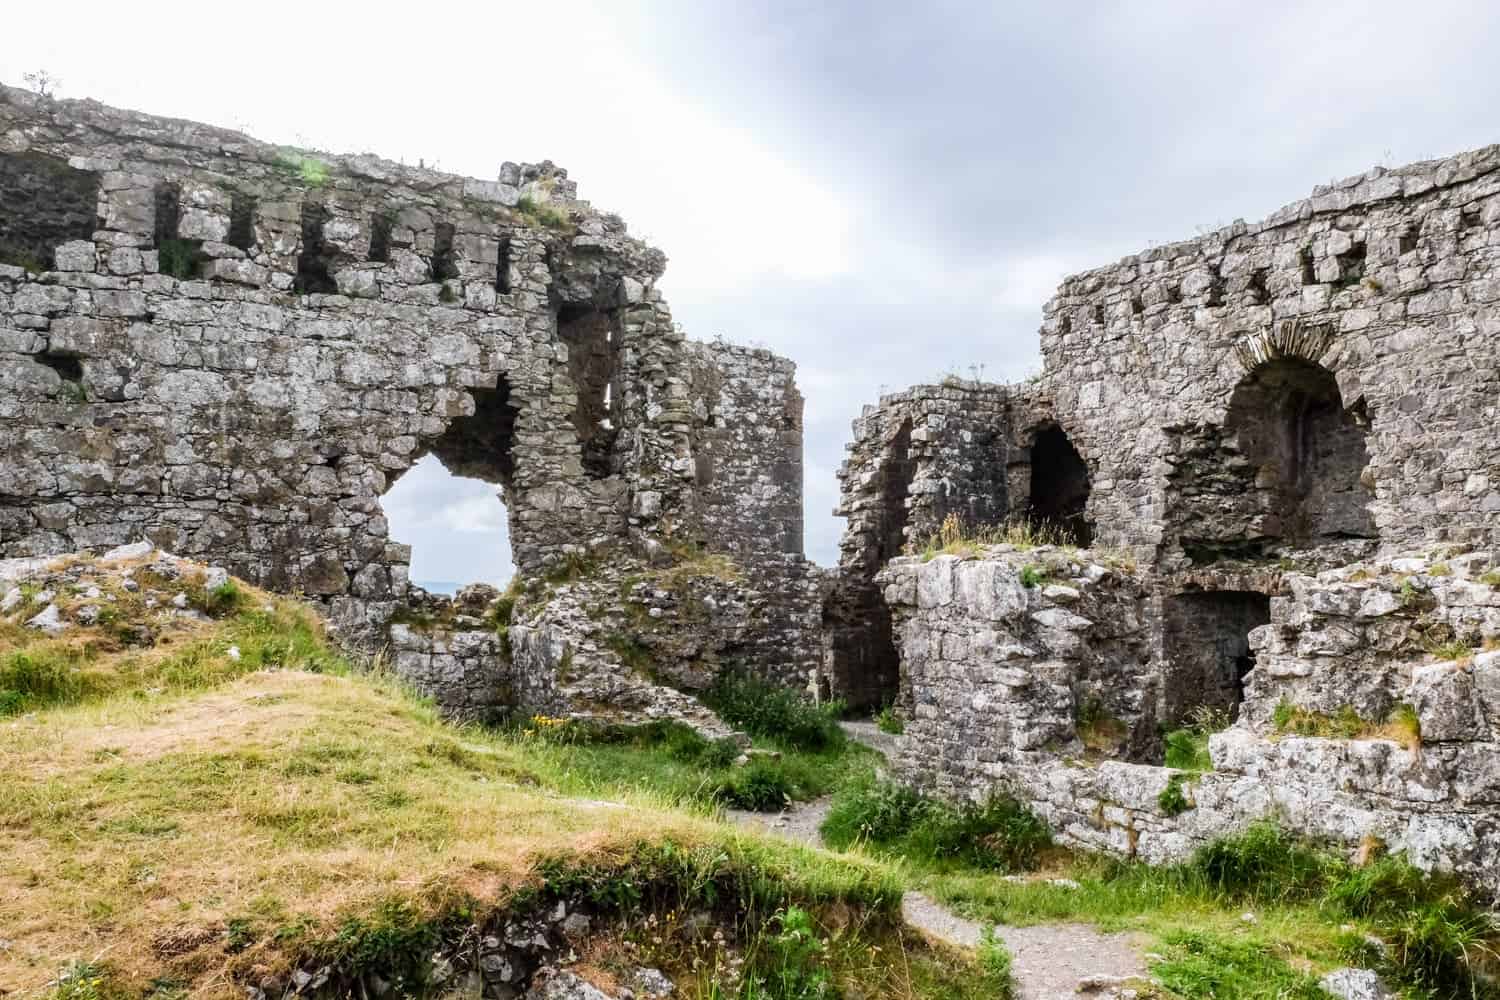 Rock of Dunamase, Ireland, Ireland's Ancient East